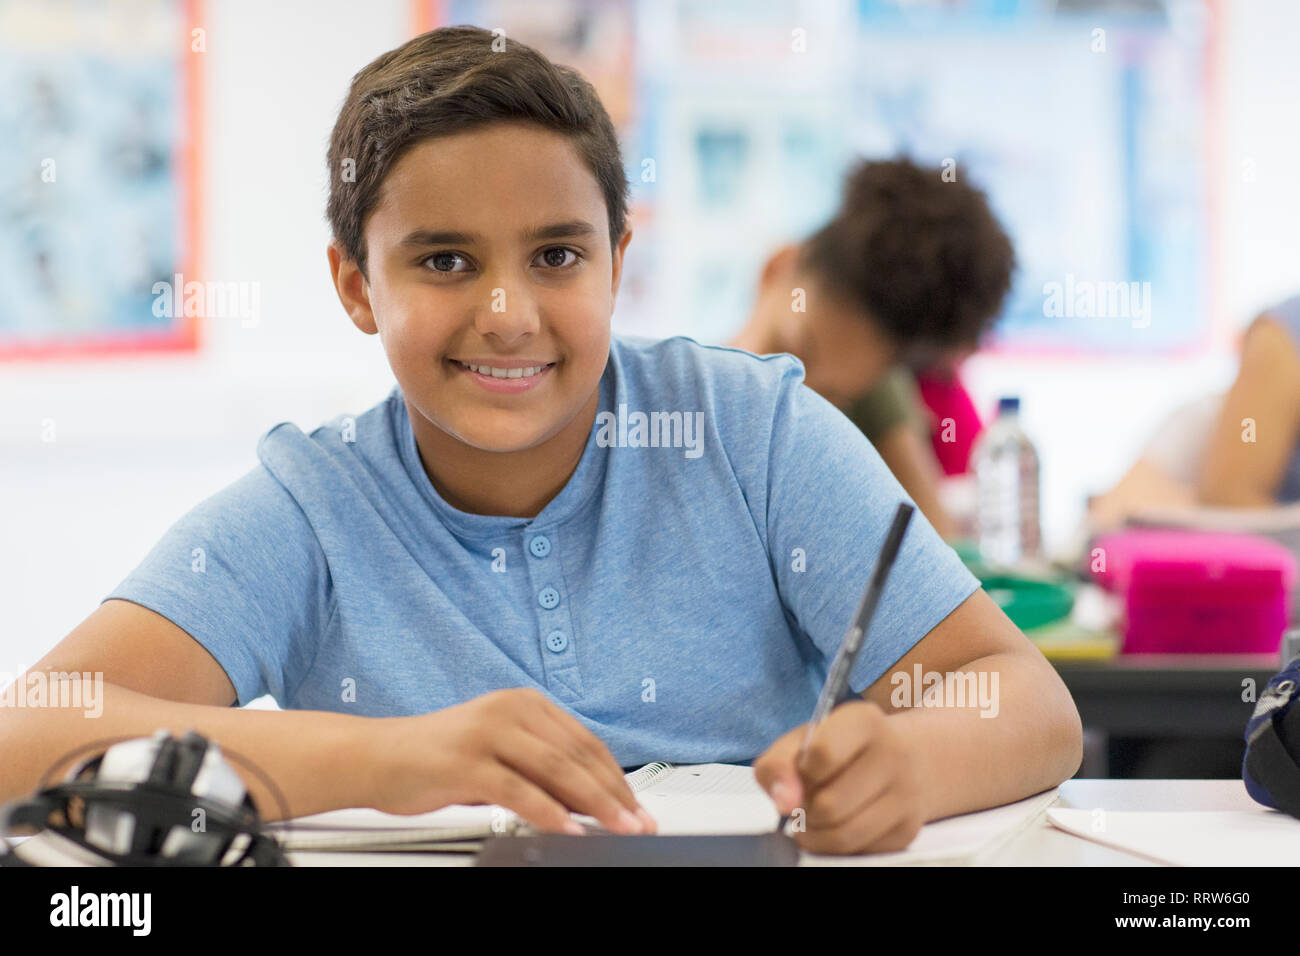 Ritratto fiducioso junior high school boy studente facendo i compiti in classe Foto Stock